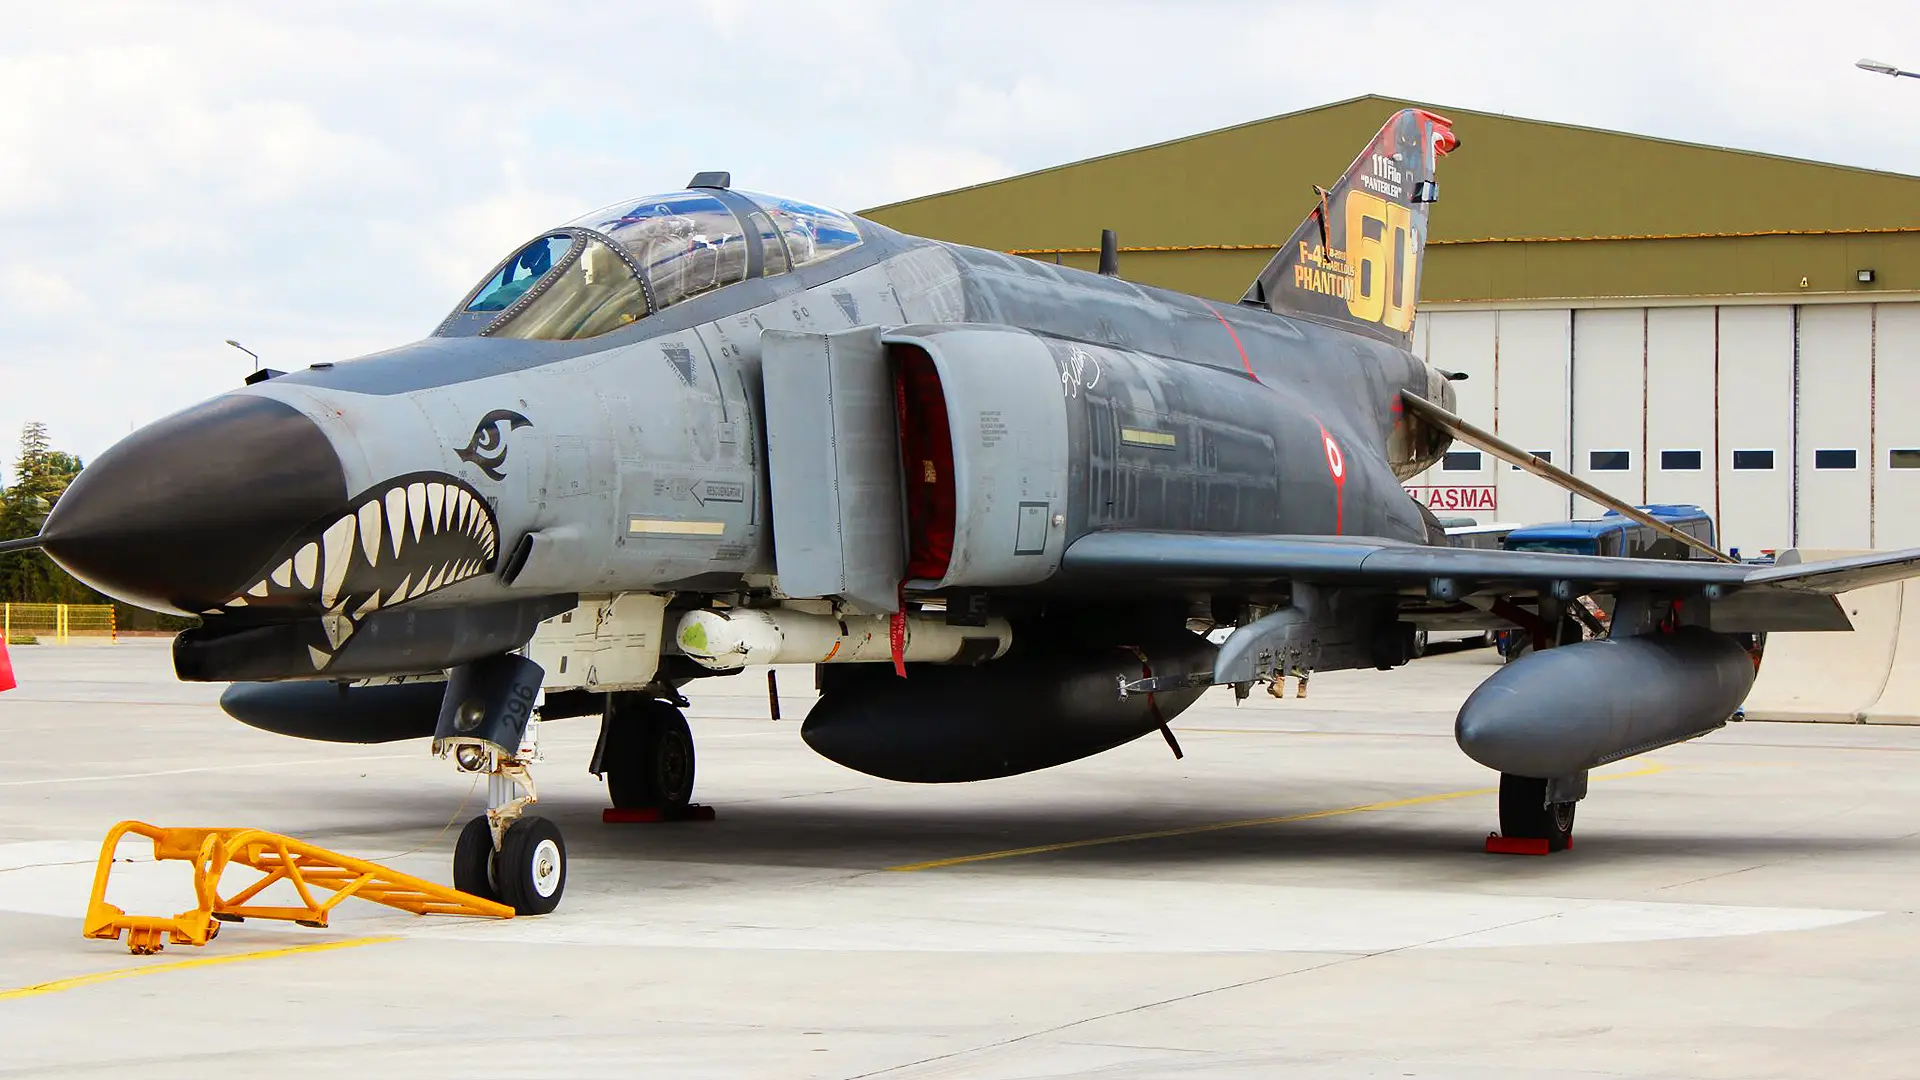 Турция до сих пор использует истребители третьего поколения F-4 Phantom II  самолёт возрастом почти 50 лет принял участие в учениях Anatilian Eagle